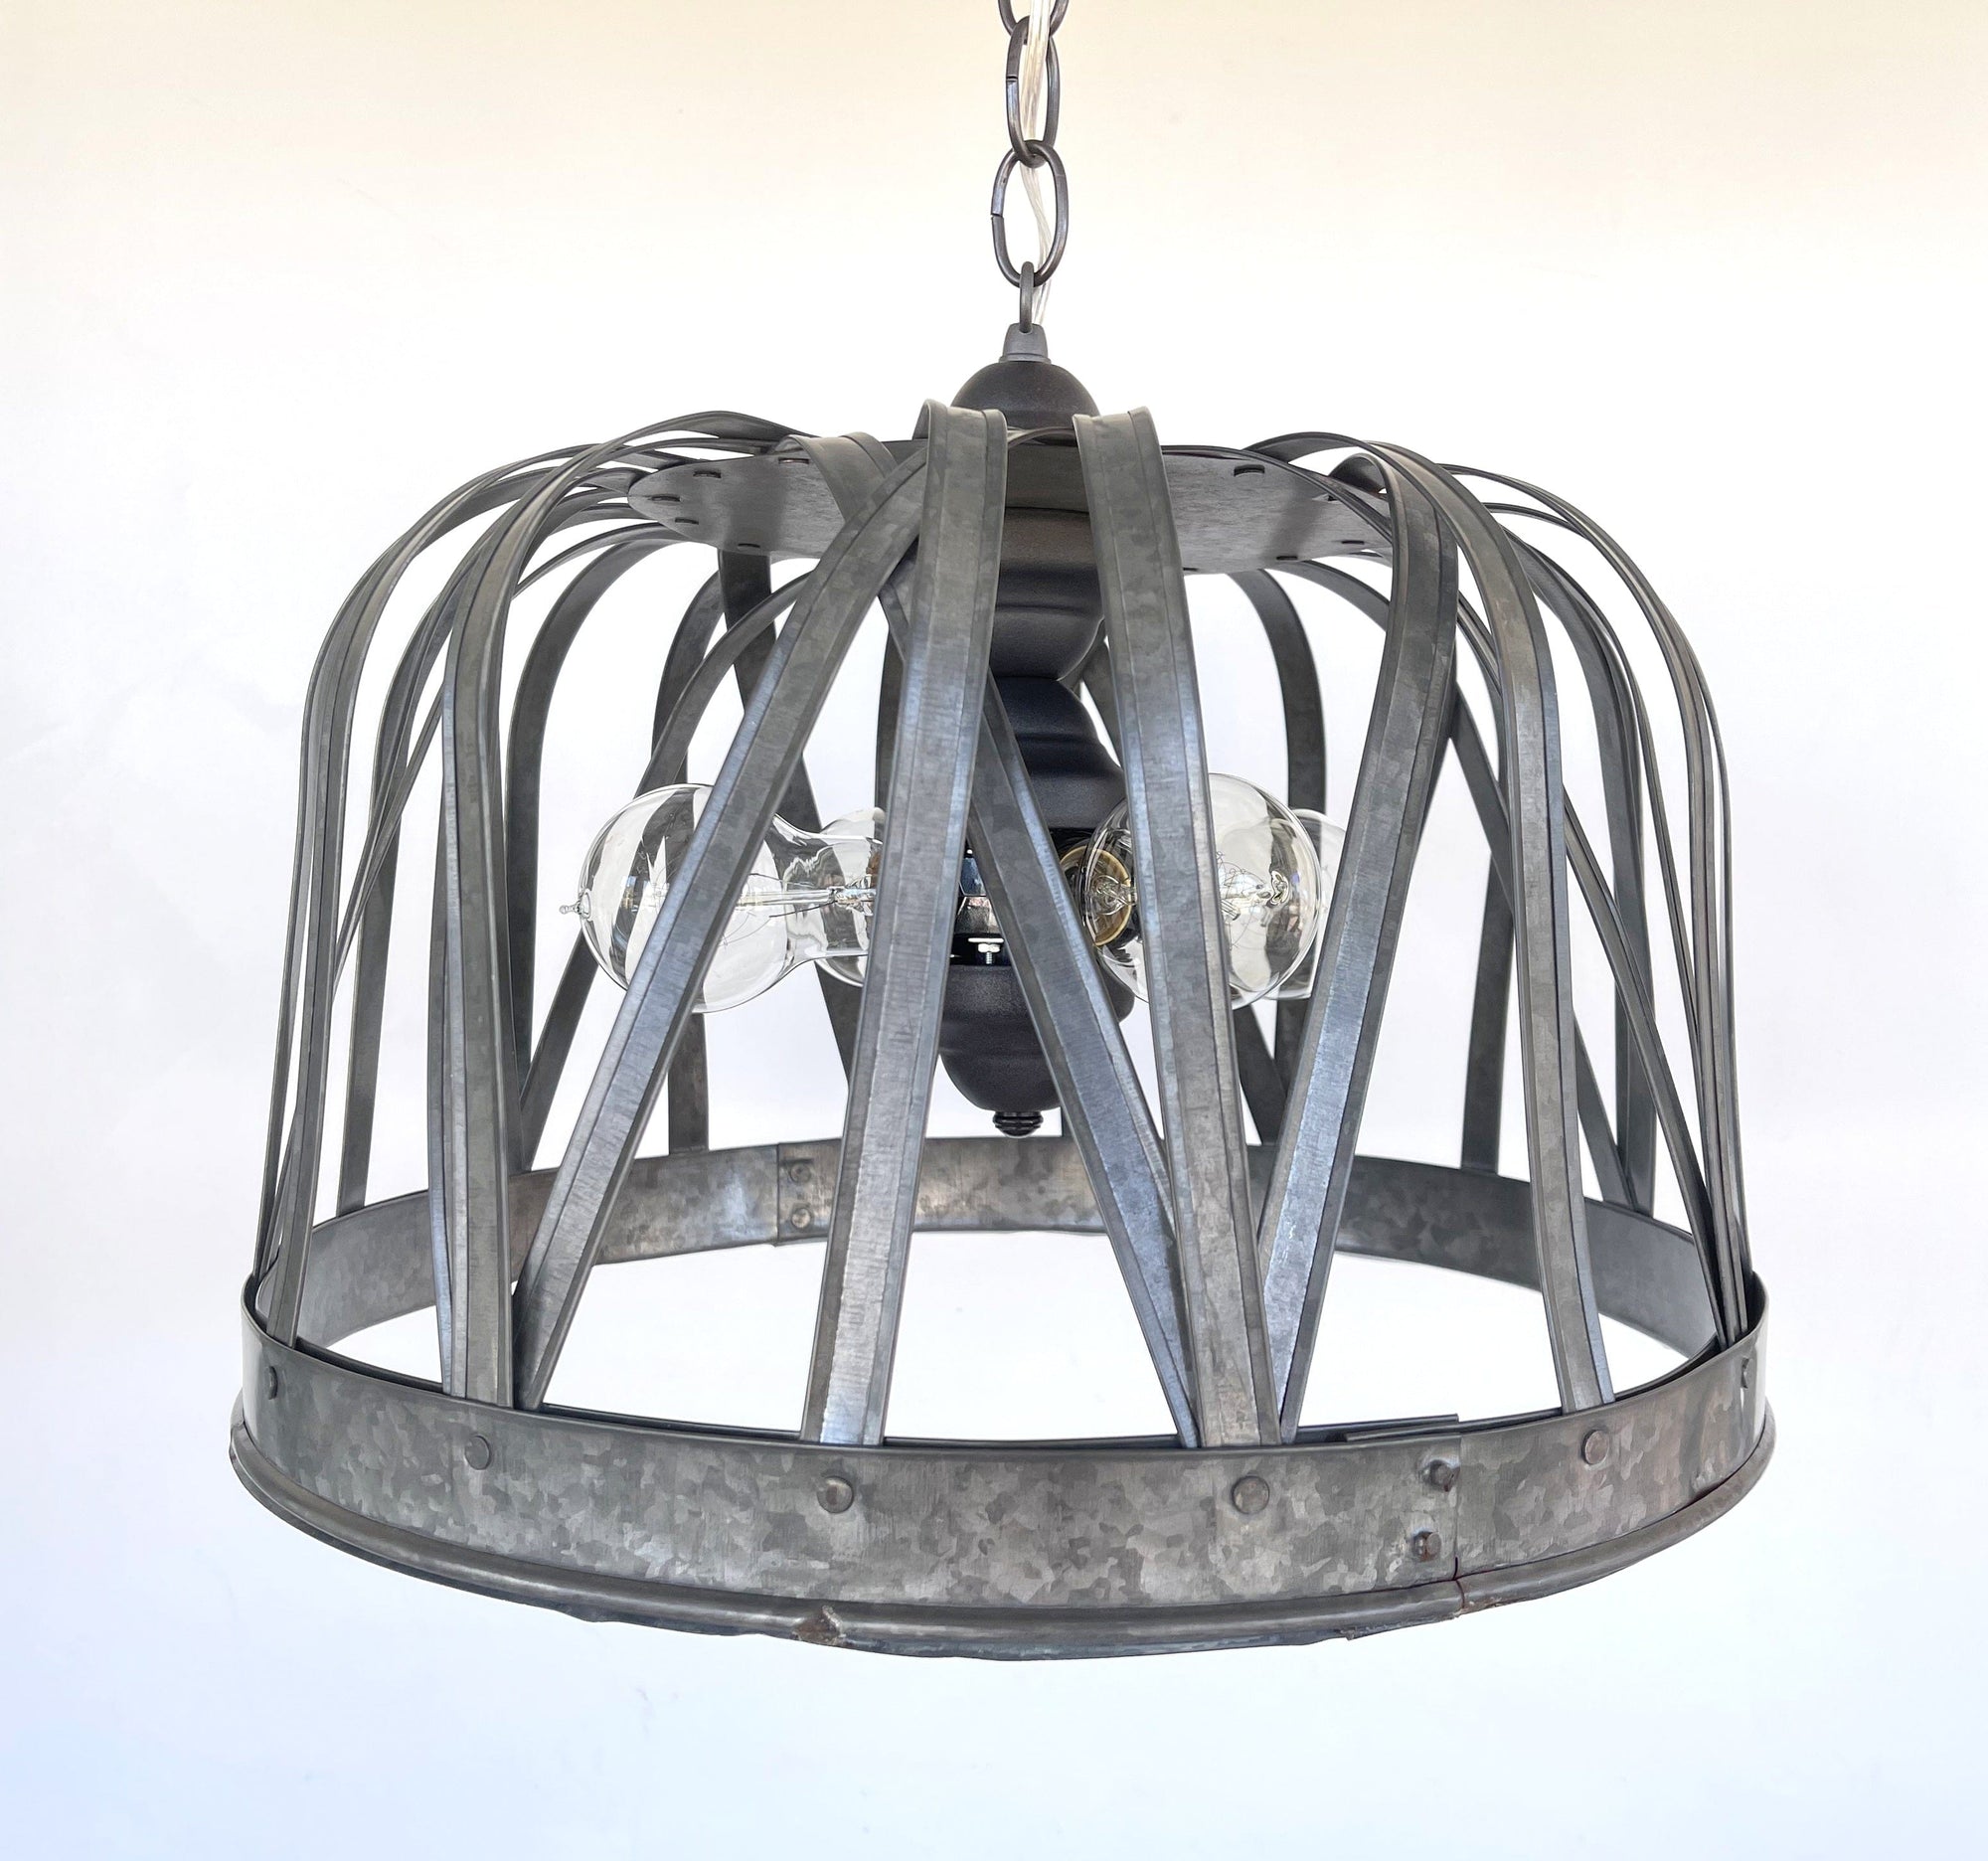 Huge Galvanized Dome Chandelier Light Fixture The Lamp Goods